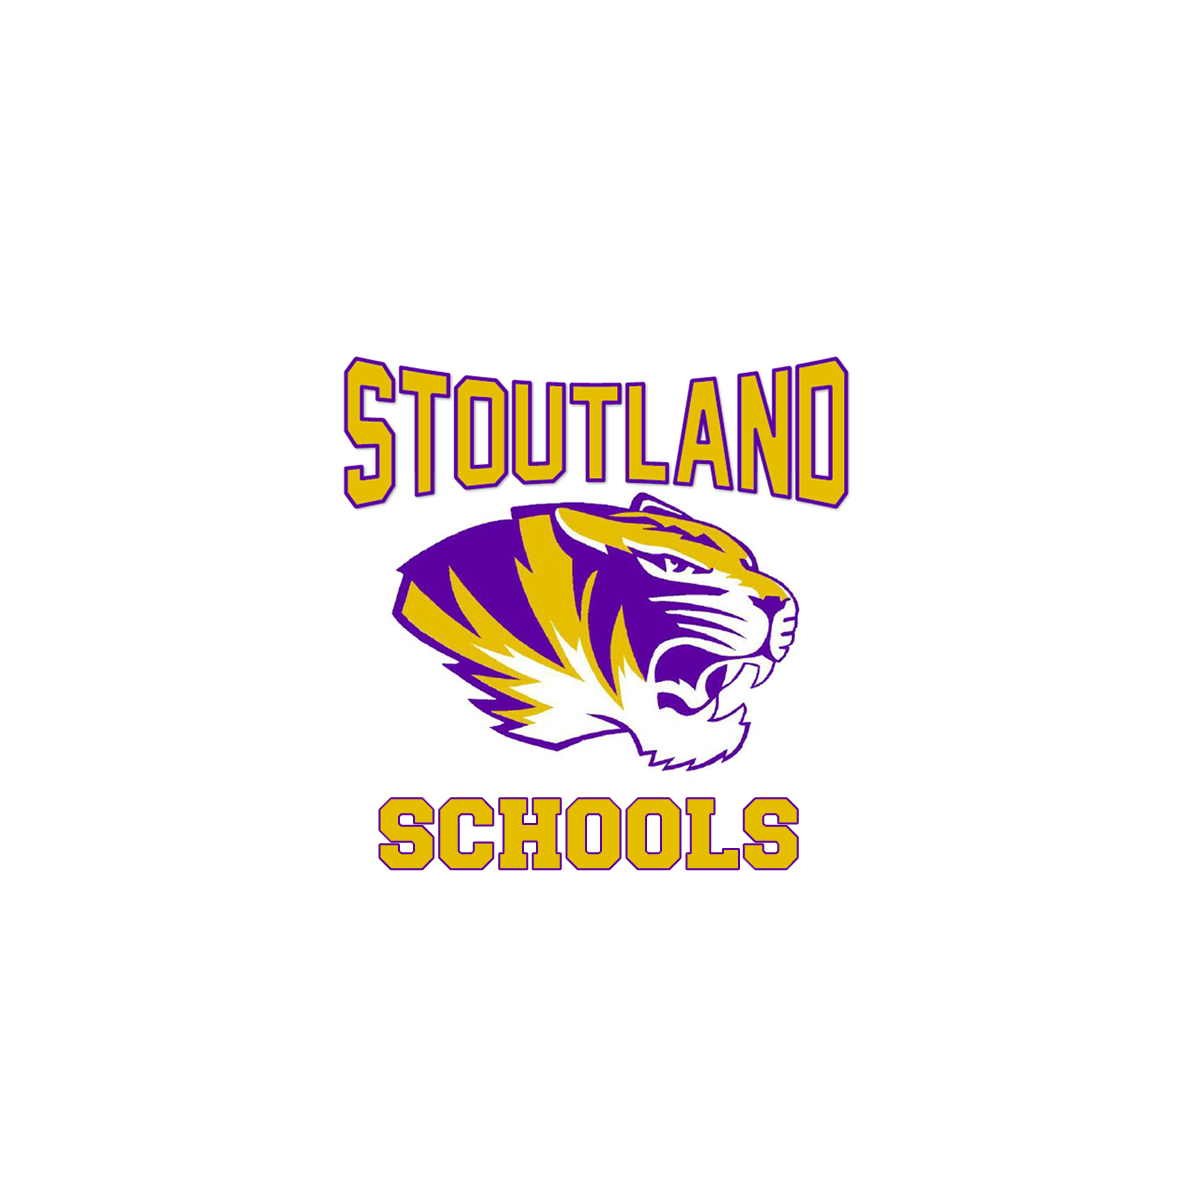 (c) Stoutlandschools.com